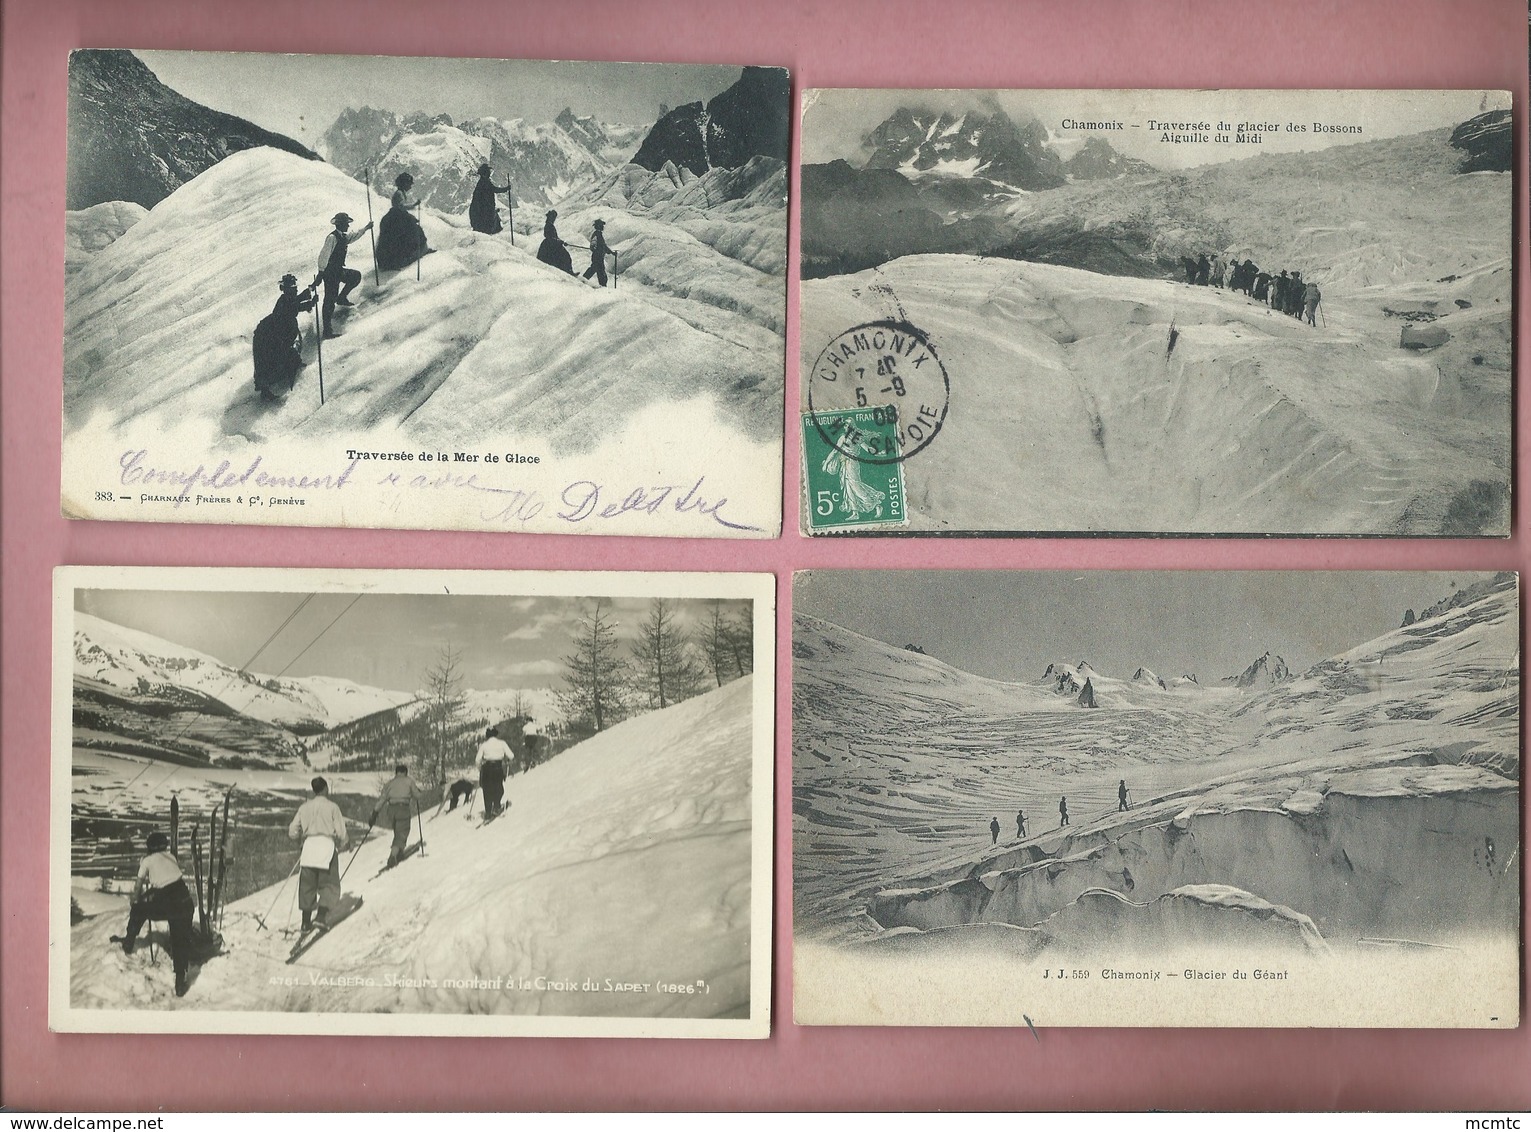 11 Cartes : Ski , Neige   -  Skis , Neiges - Sport Invernali